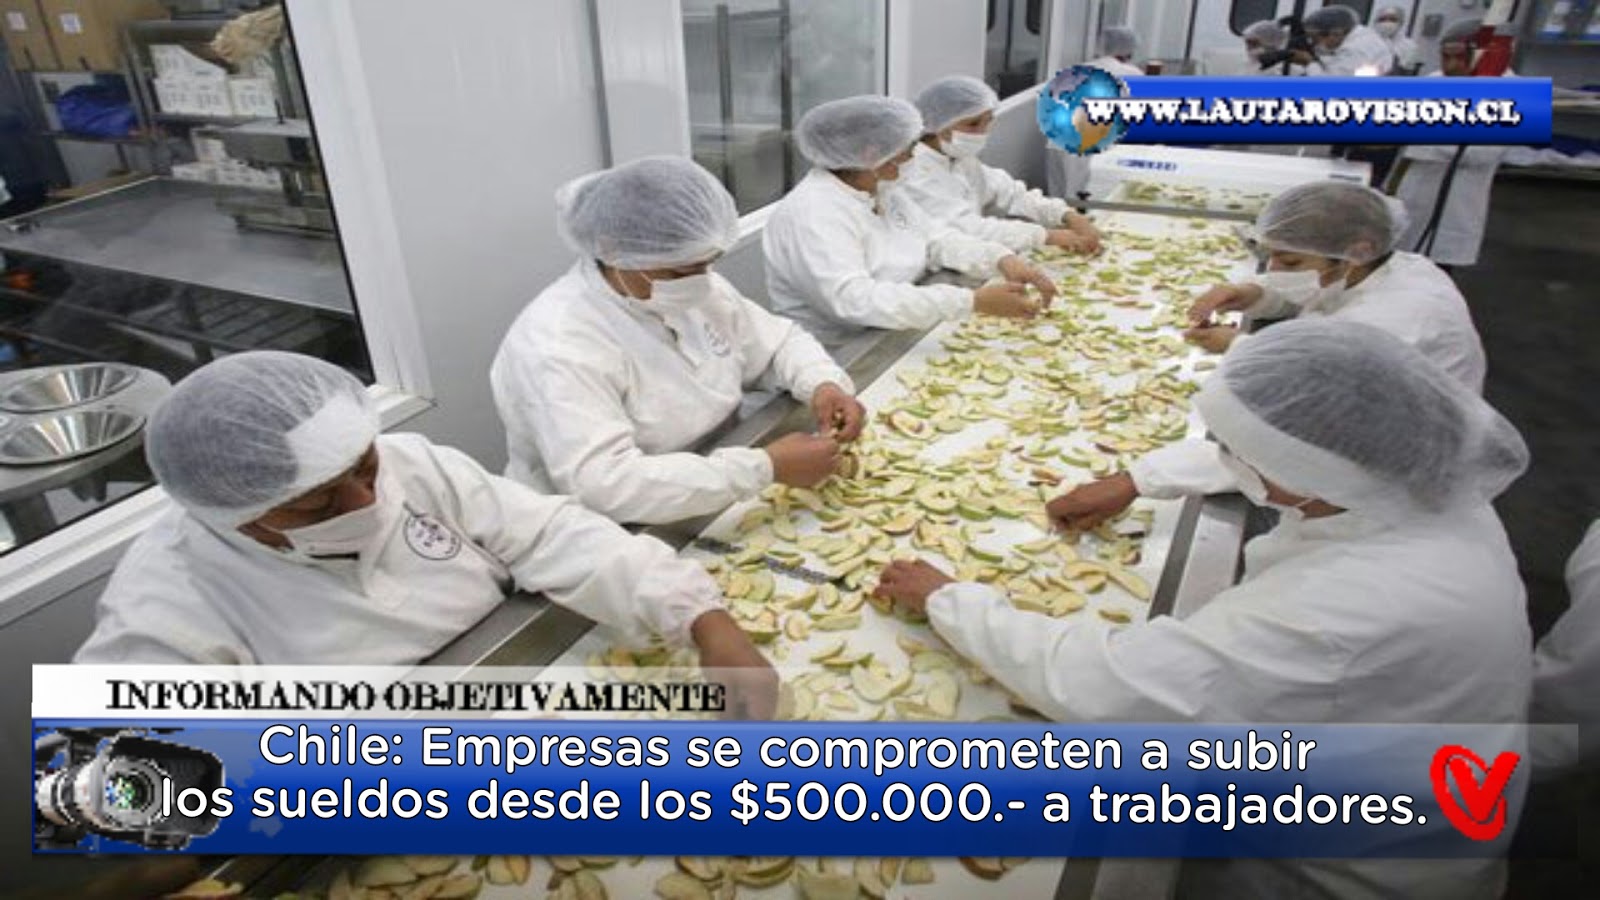 CHILE: Más de 600 empresas se comprometen a sueldos desde los $500.000.- ¿Será Verdad o es una estrategia comunicacional?